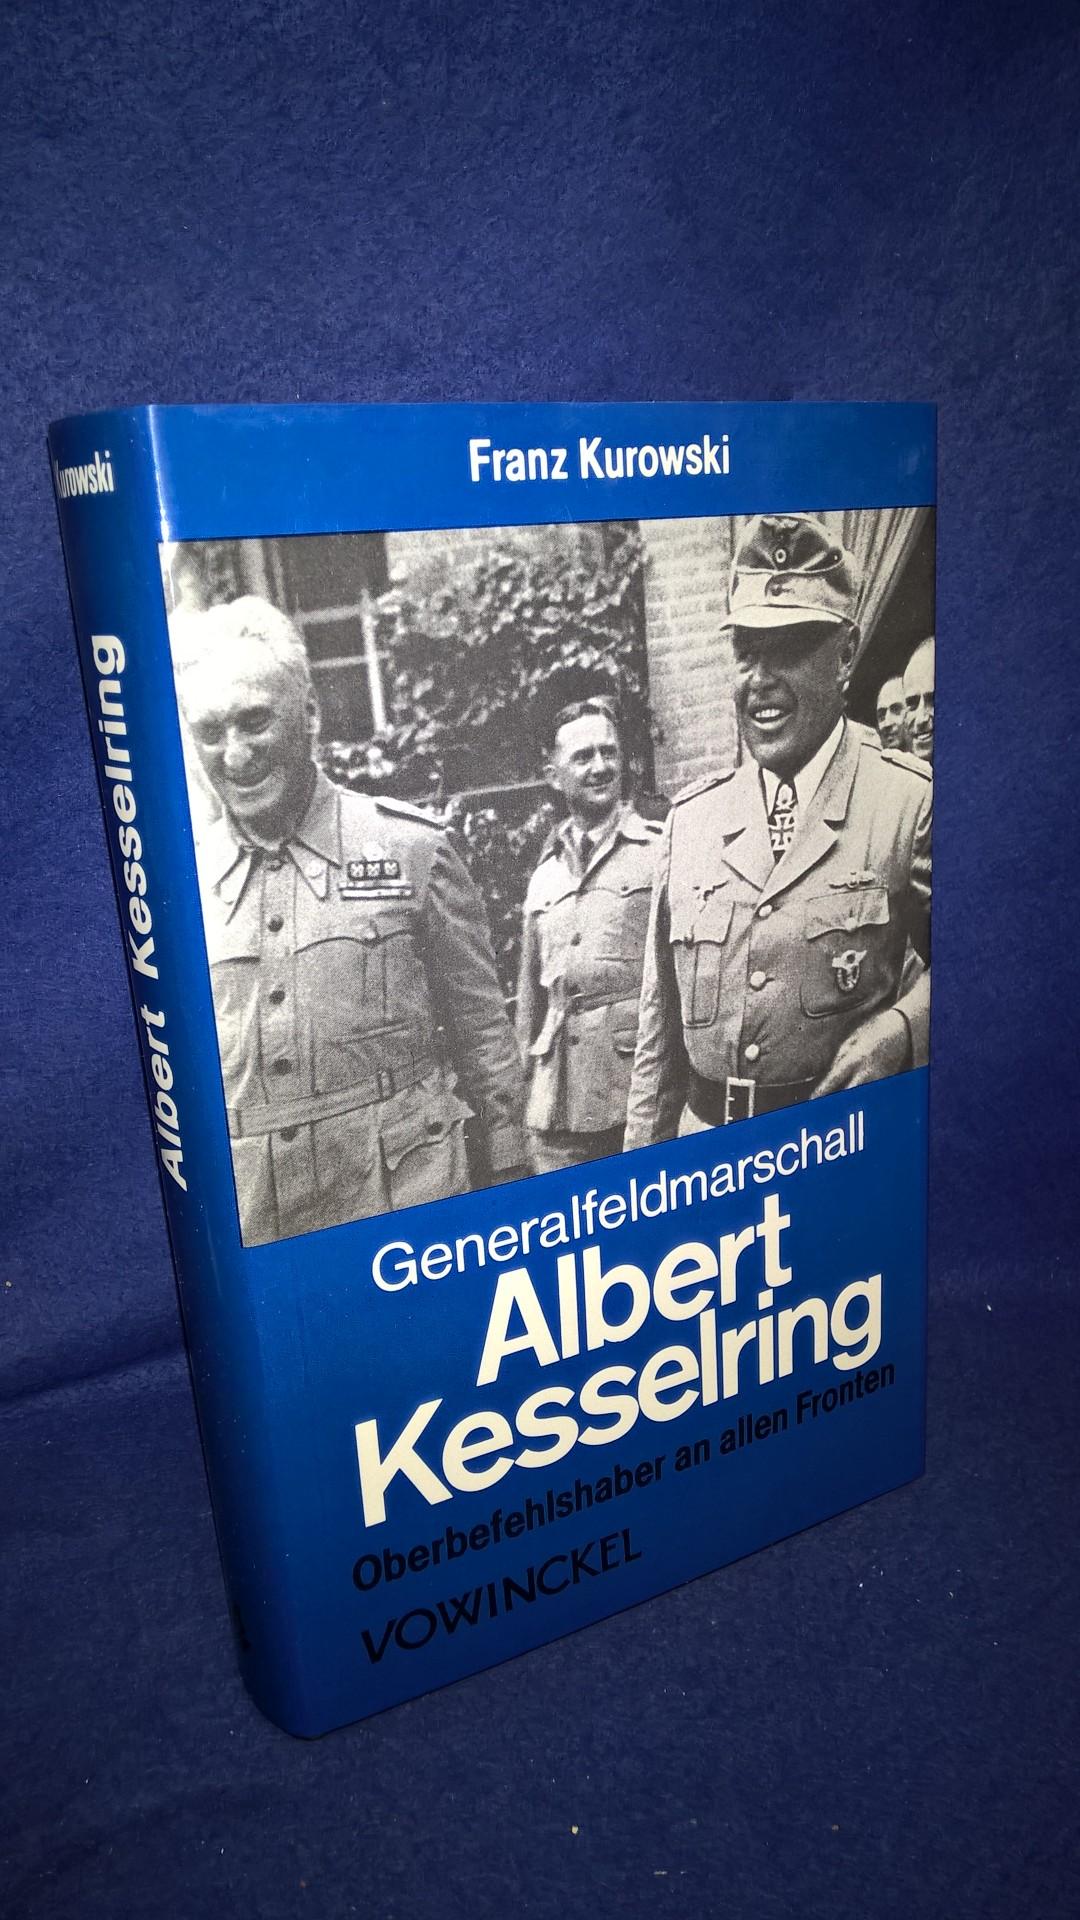 Generalfeldmarschall Albert Kesselring. Oberbefehlshaber an allen Fronten